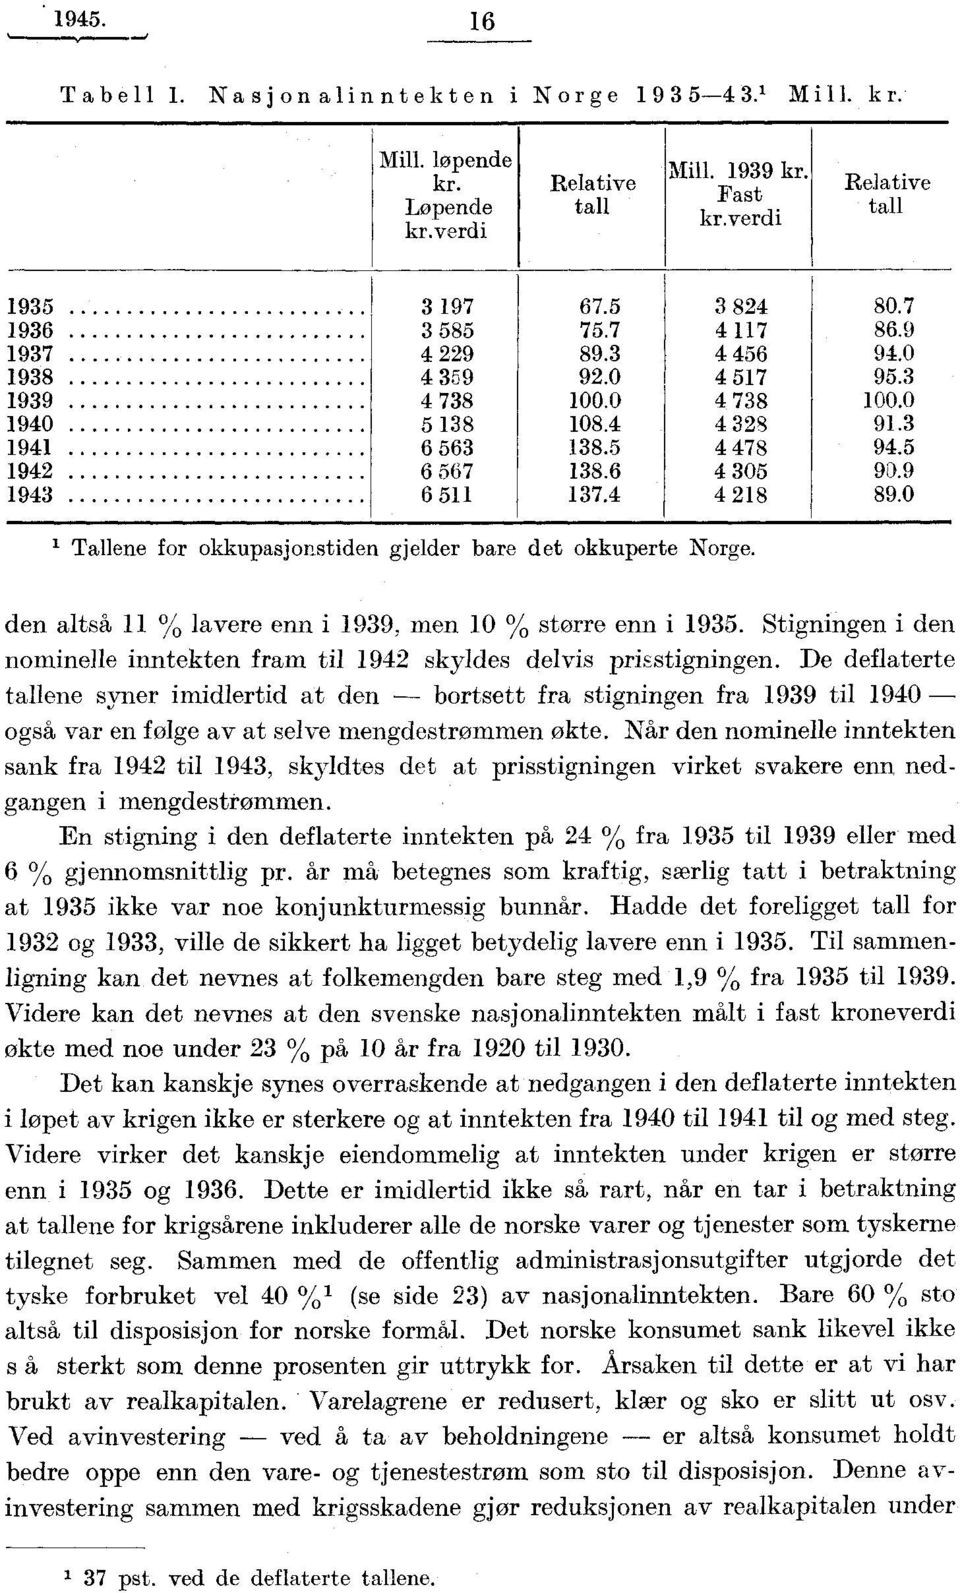 5 4 478 94.5 38.6 4 305 90.9 37.4 4 28 89.0 Tallene for okkupasjonstiden gjelder bare det okkuperte Norge. den altså /0 lavere enn i 939, men 0 % større enn i 935.